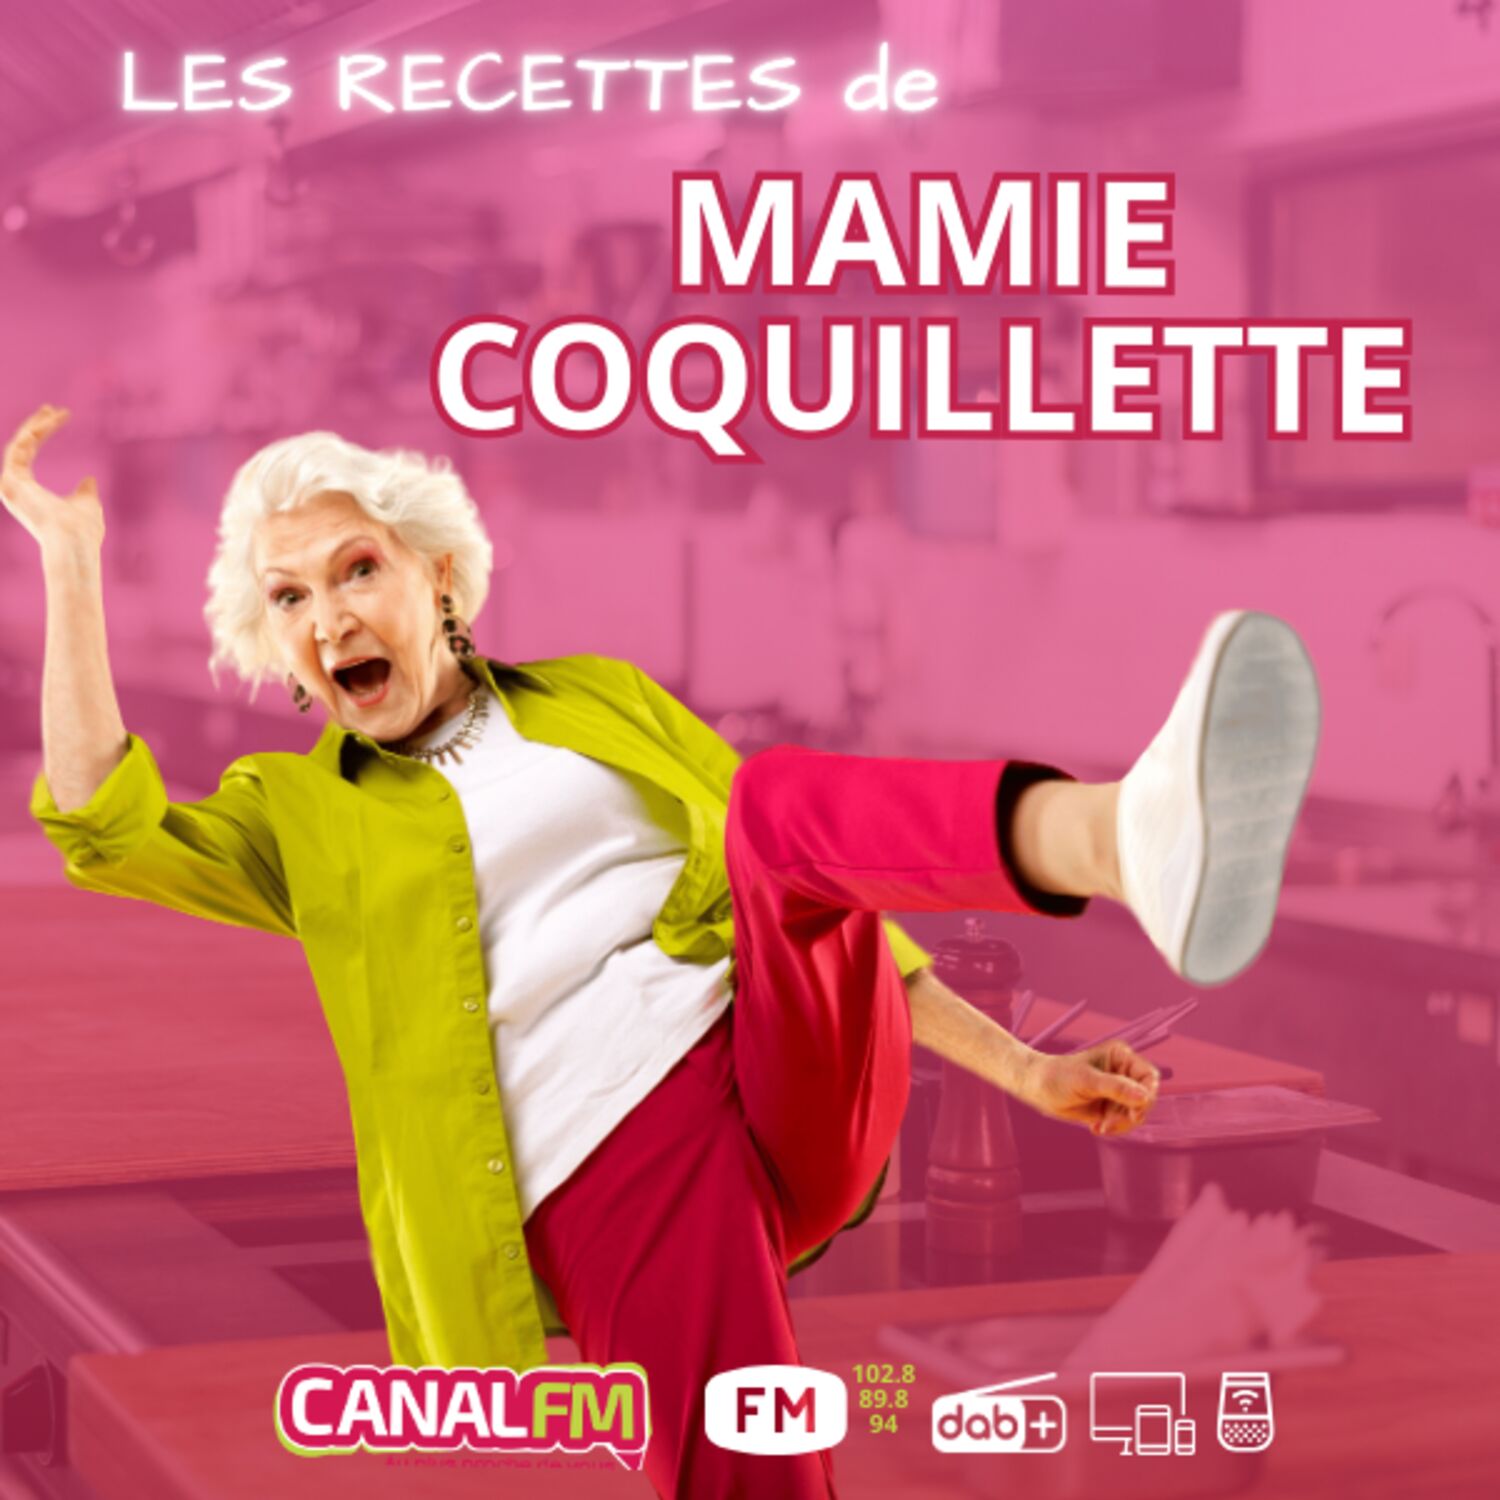 Les Recettes de Mamie Coquillette